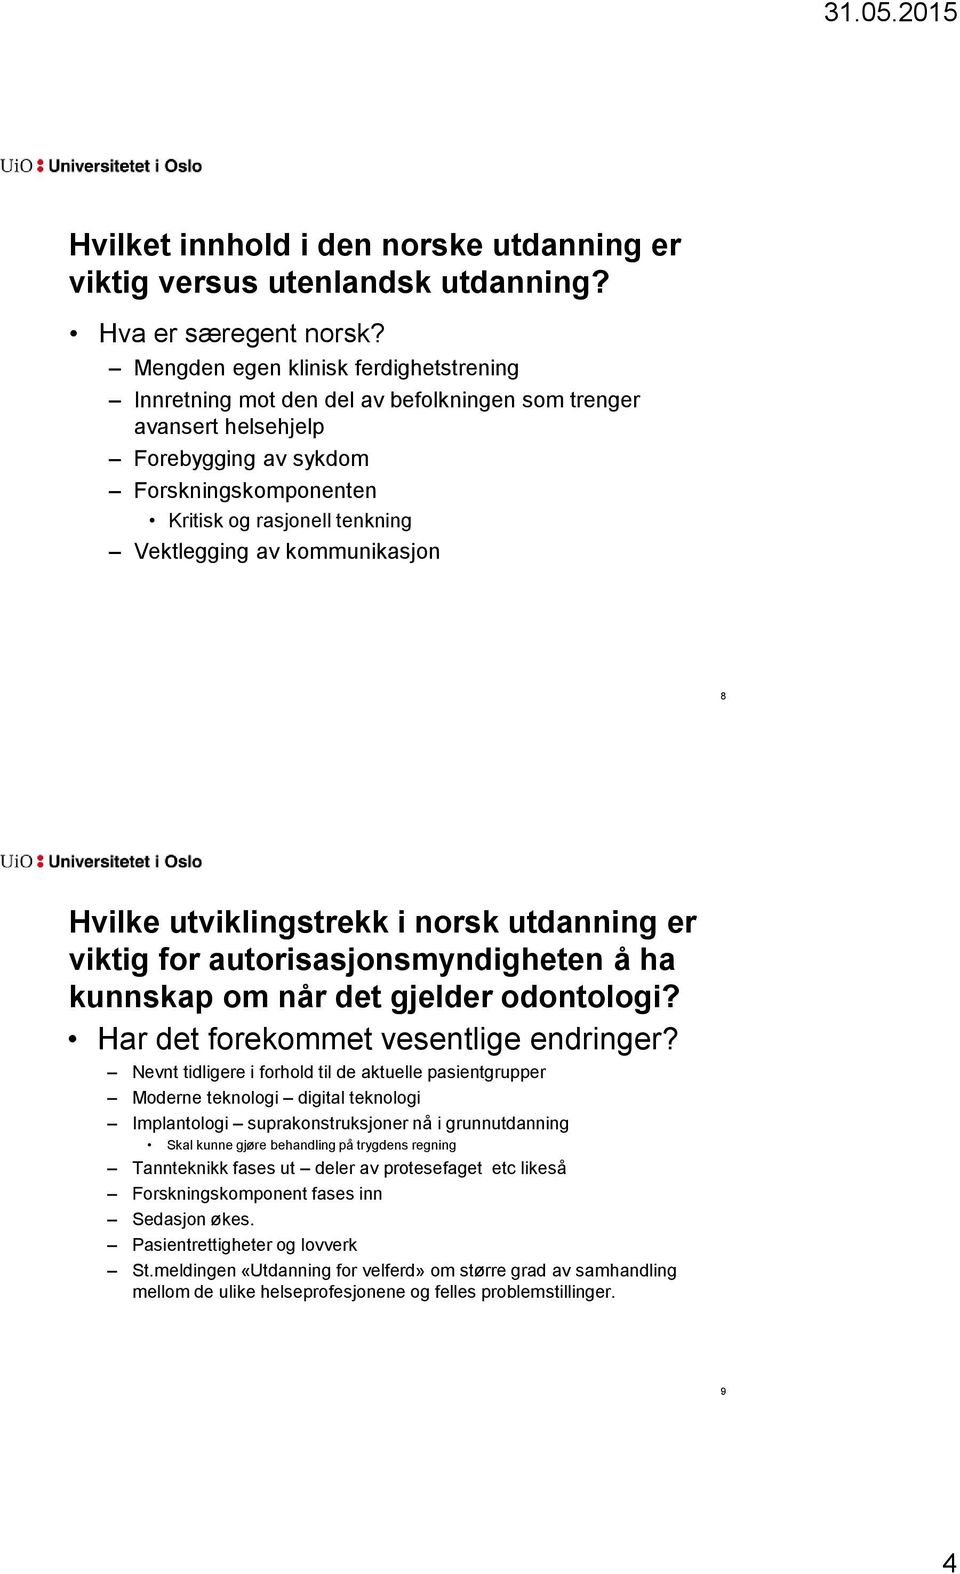 kommunikasjon 8 Hvilke utviklingstrekk i norsk utdanning er viktig for autorisasjonsmyndigheten å ha kunnskap om når det gjelder odontologi? Har det forekommet vesentlige endringer?